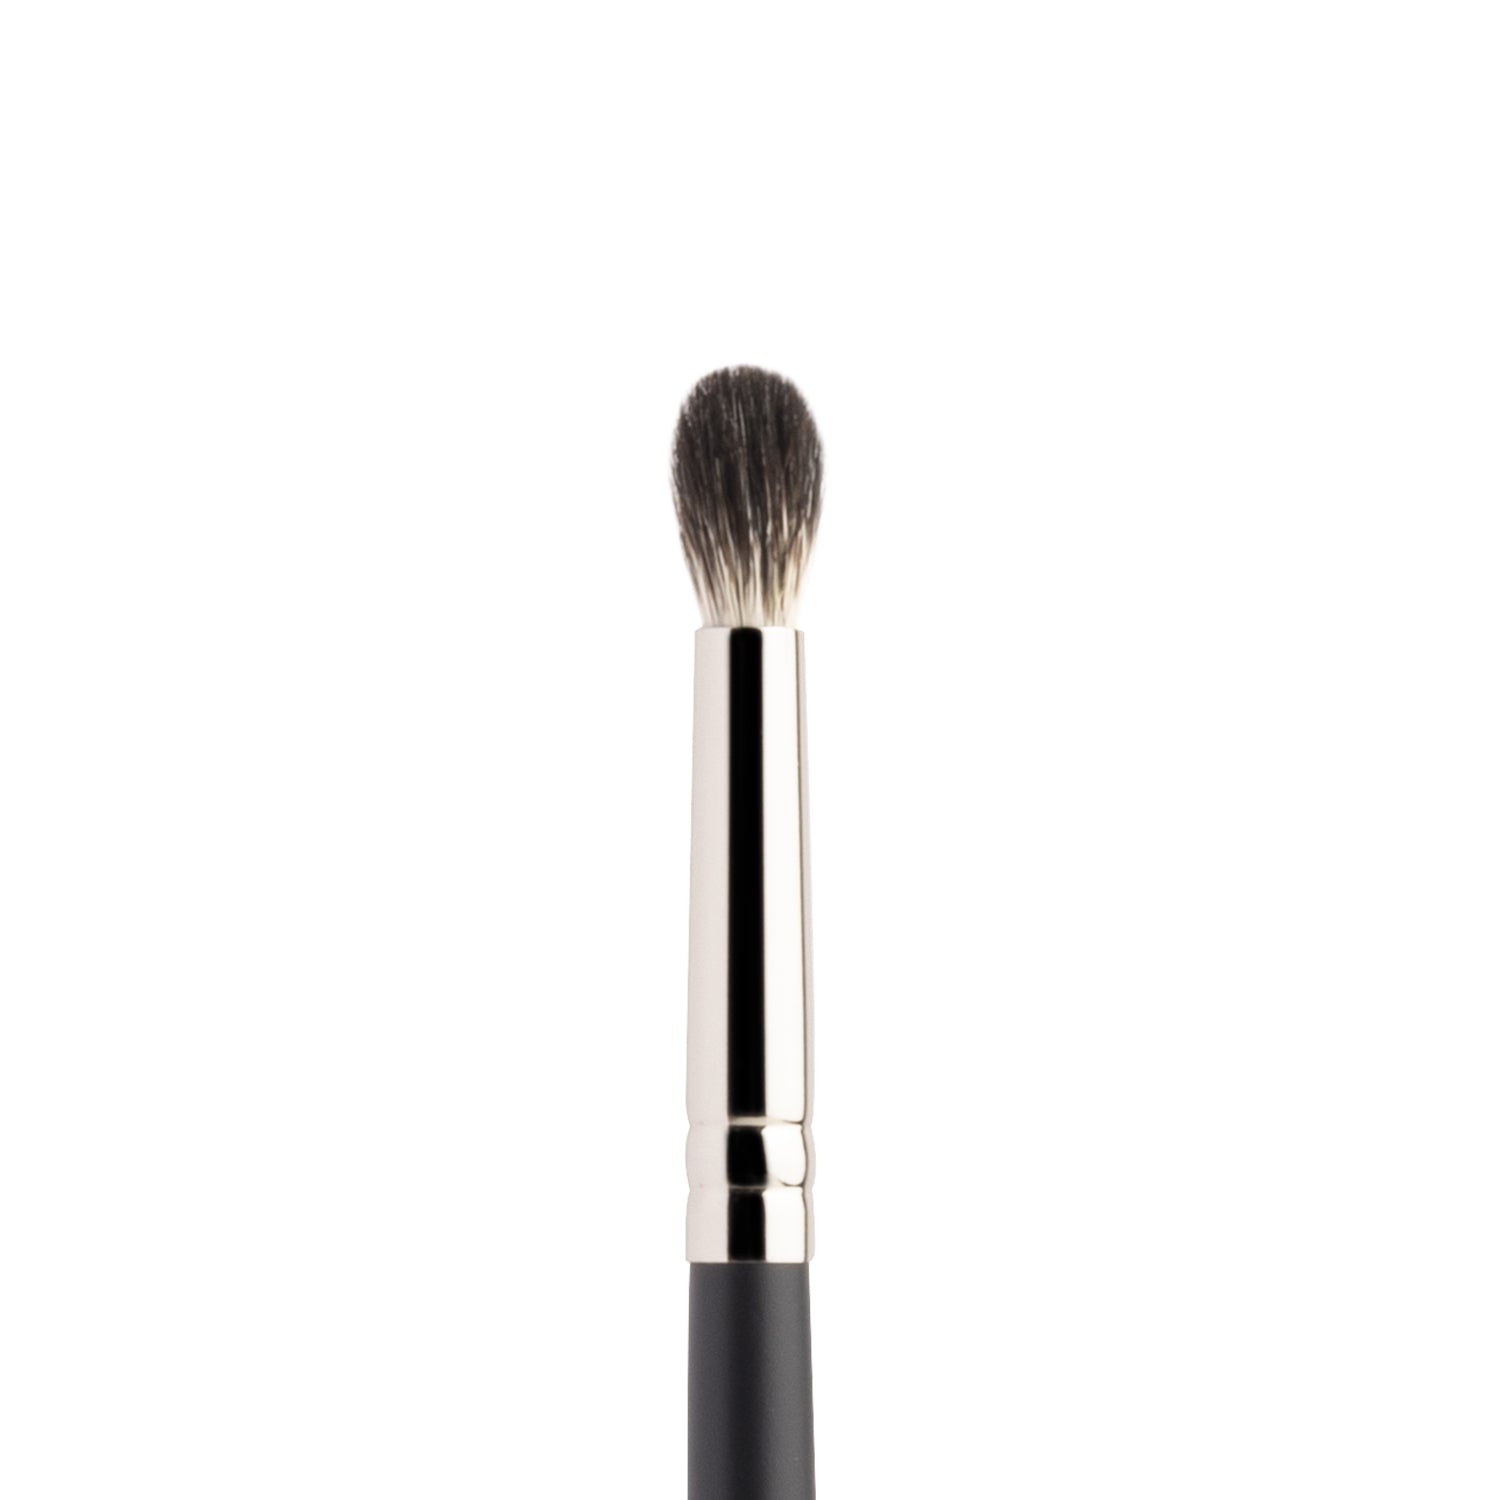 PAC Cosmetics Eyeshadow Blending Brush 229